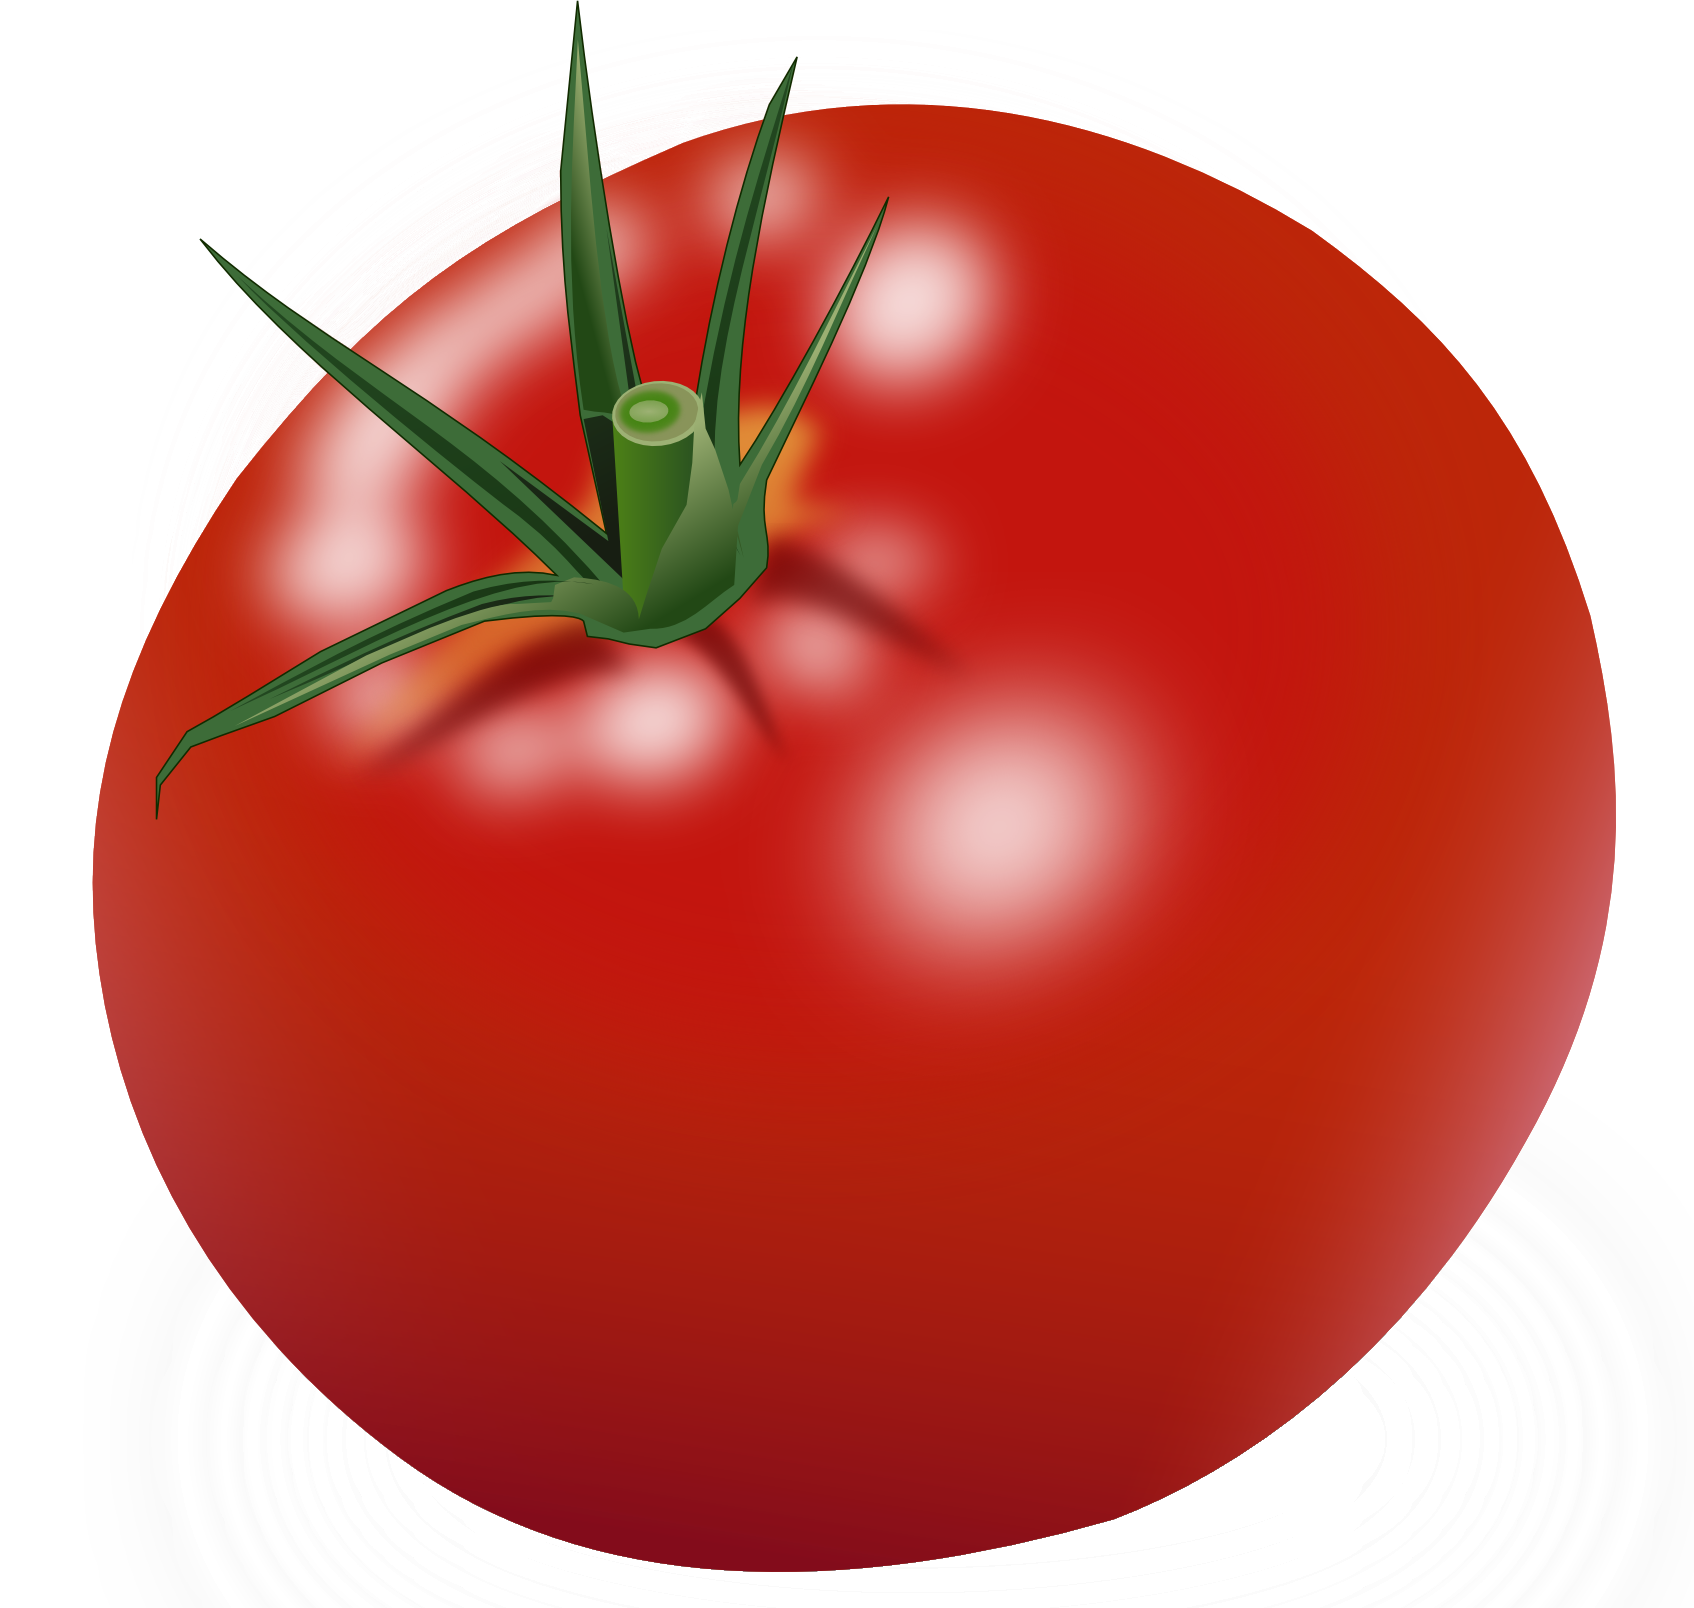 Cà chua đỏ lớn